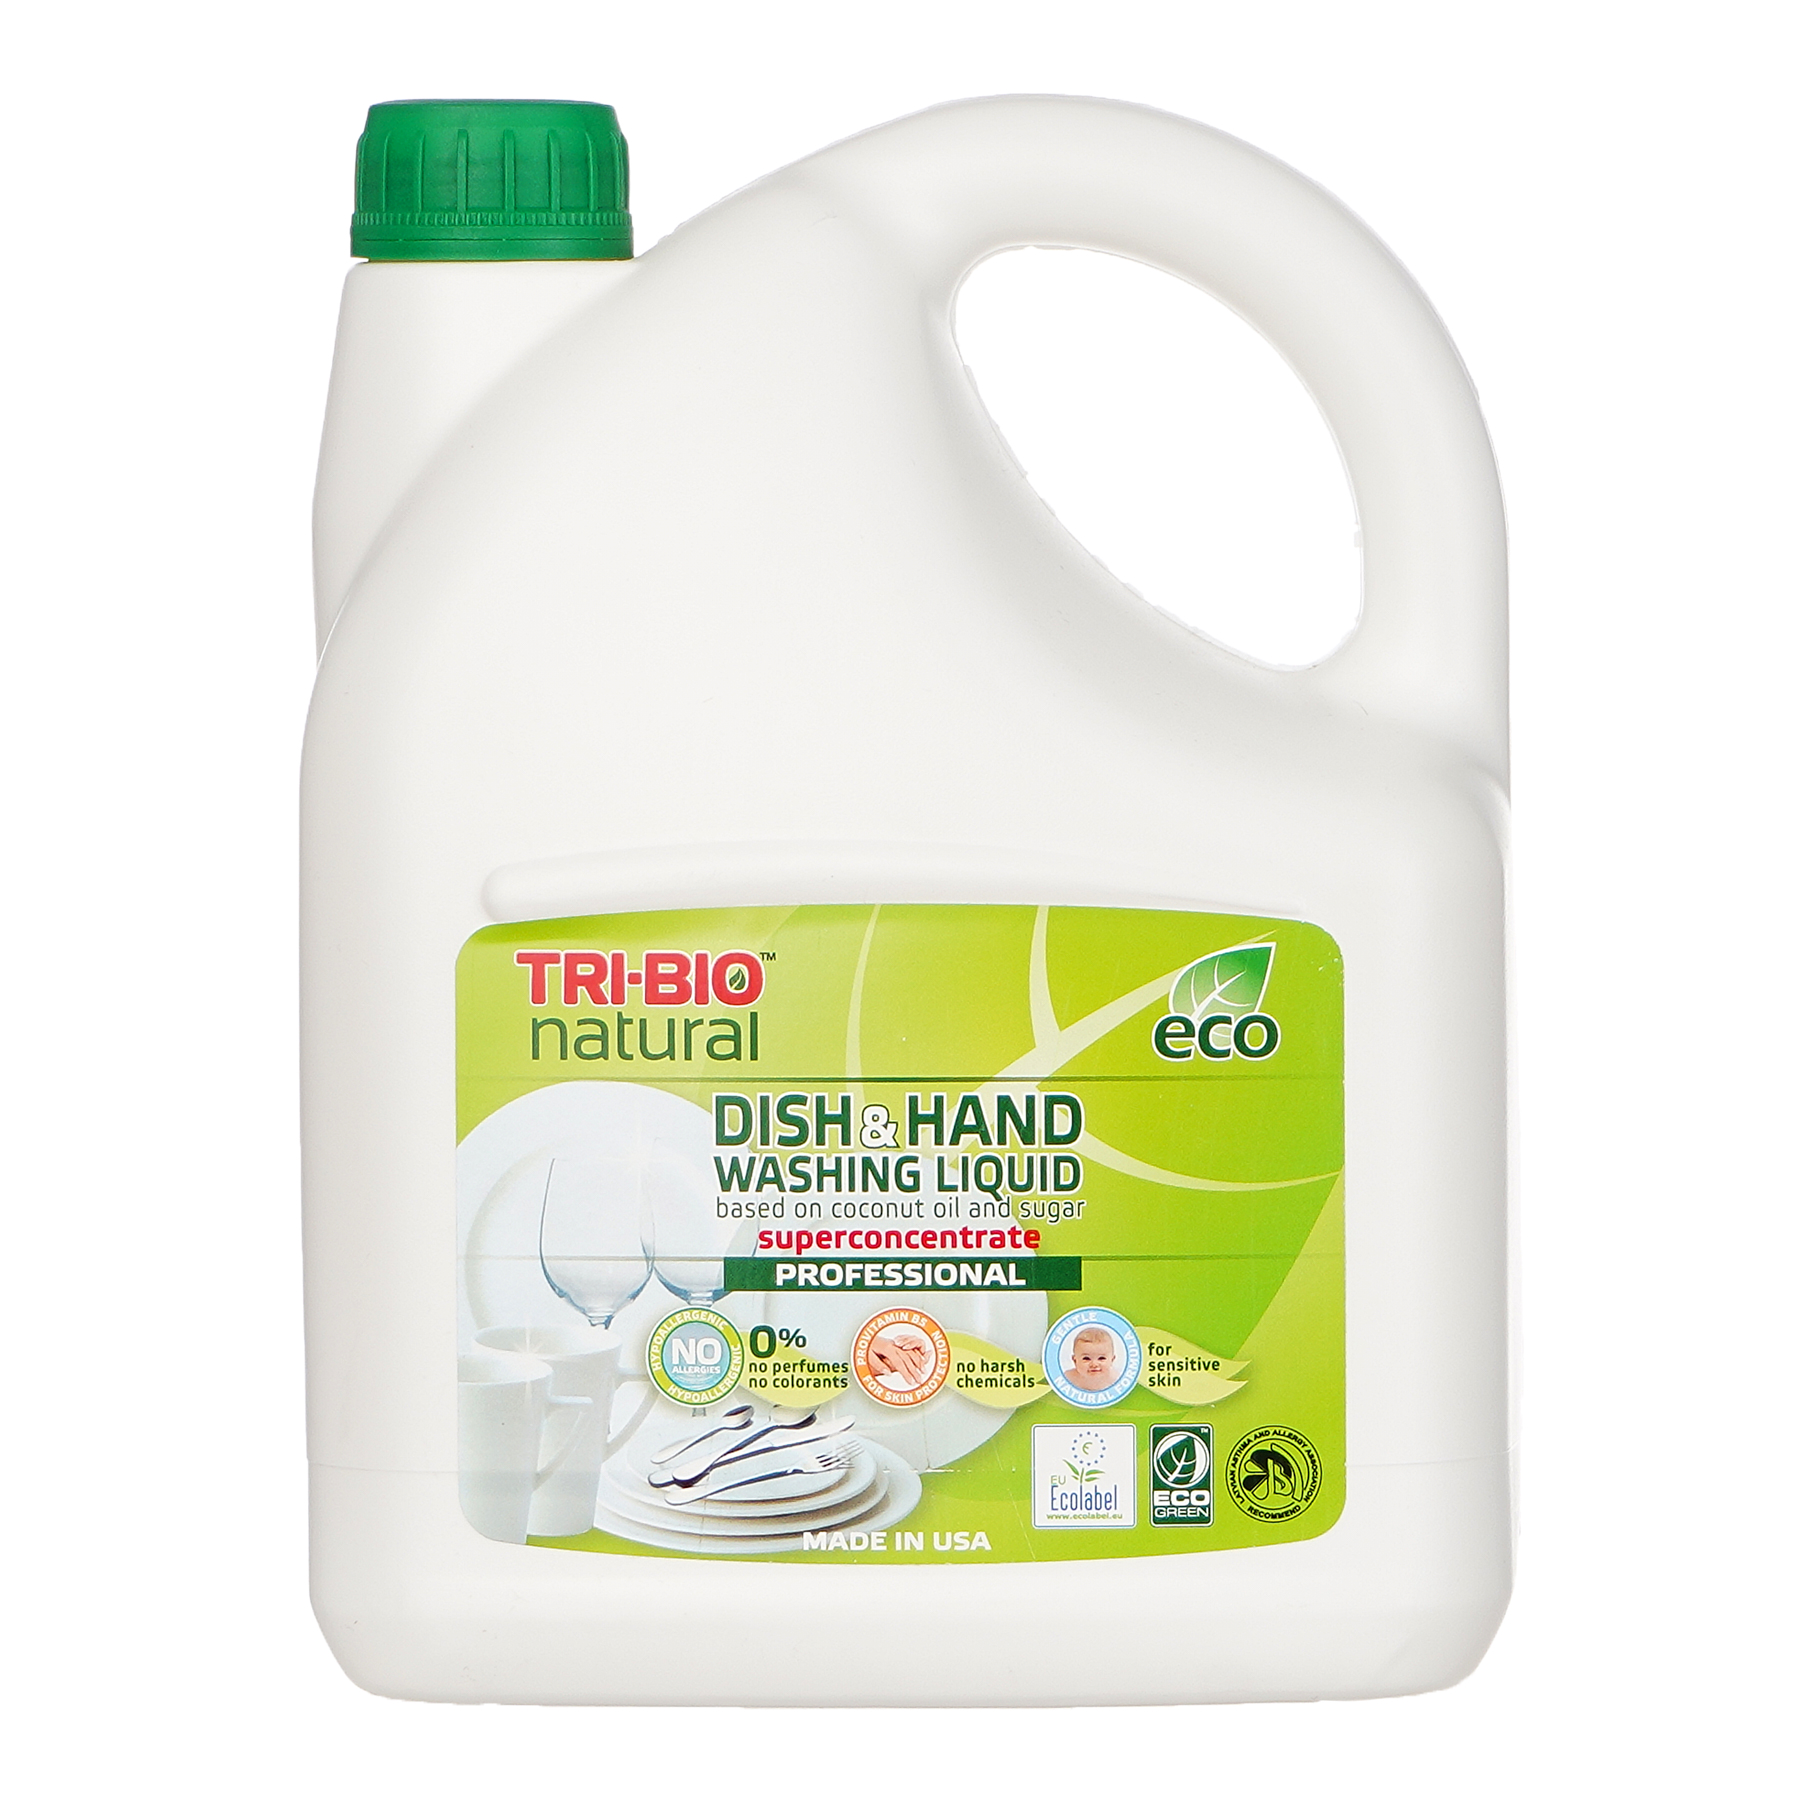 Професионален натурален течен препарат за миене на съдове и ръце, Dish&Hand Washing Liquid, 2.84 л.